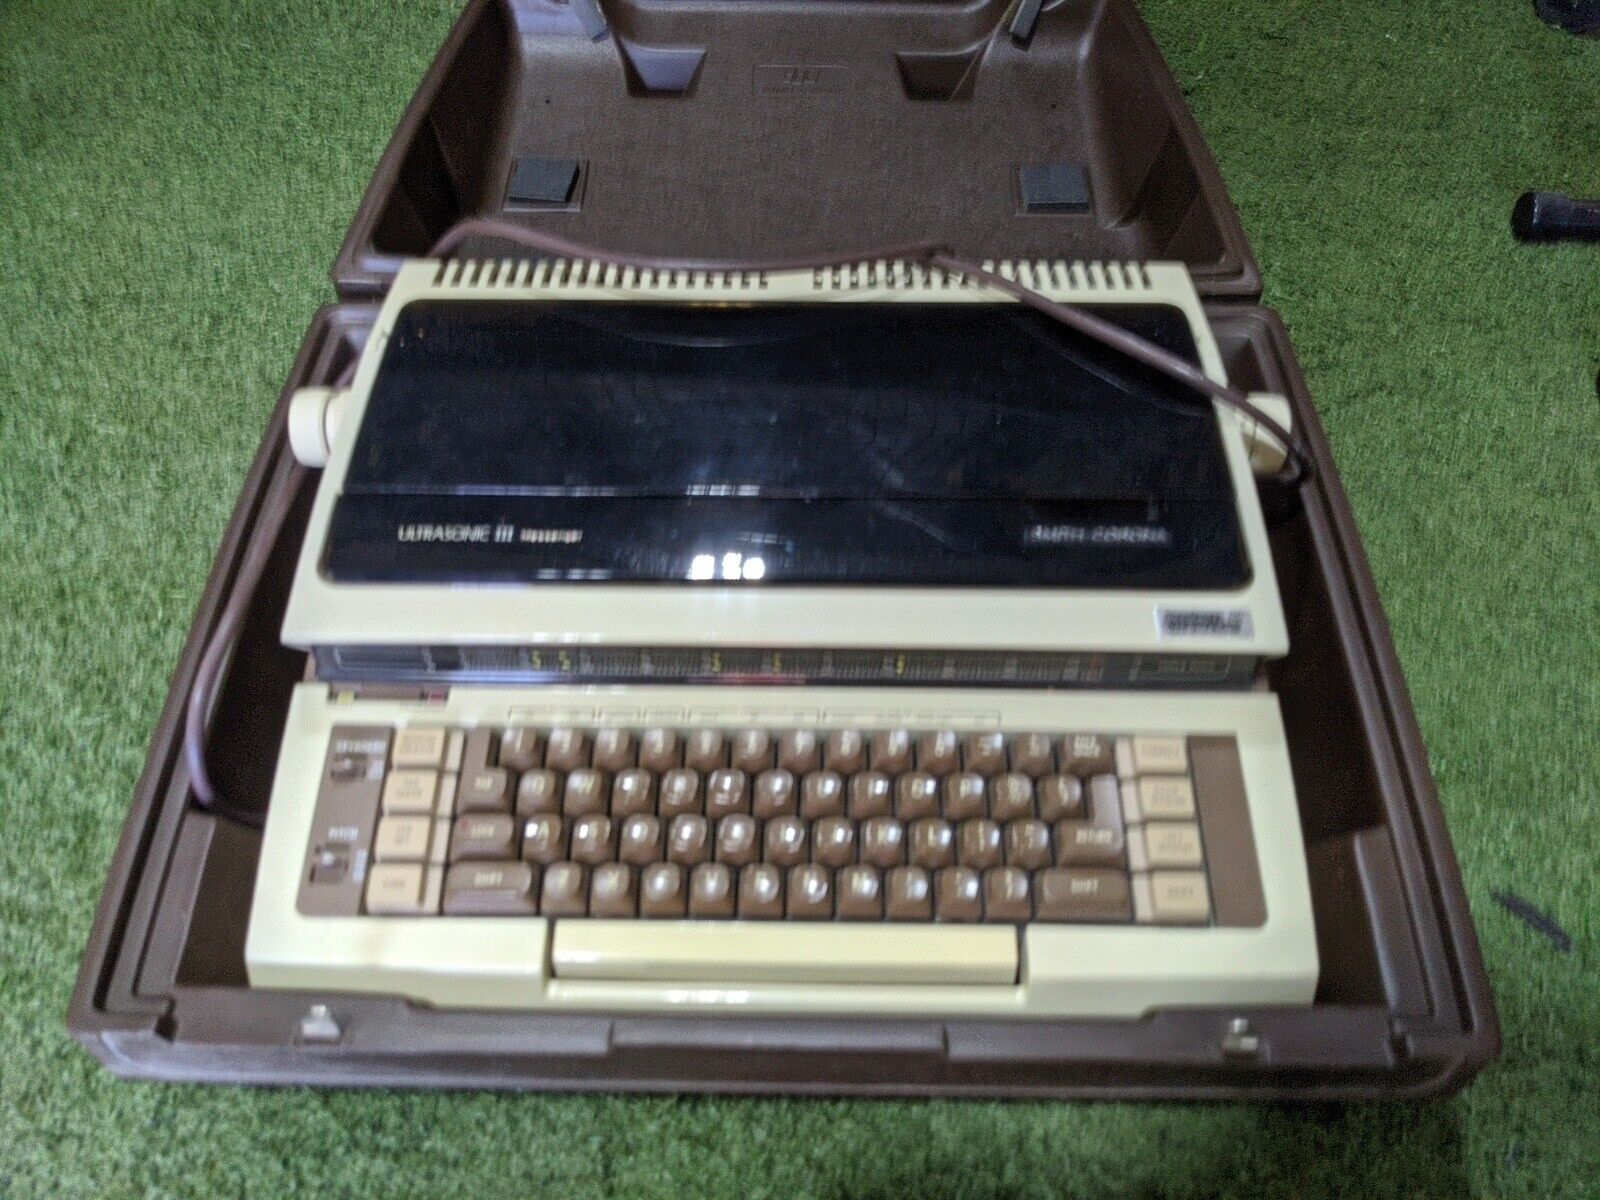 Vintage Electric Typewriter - Smith Corona Ultrasonic III Messenger - With Case